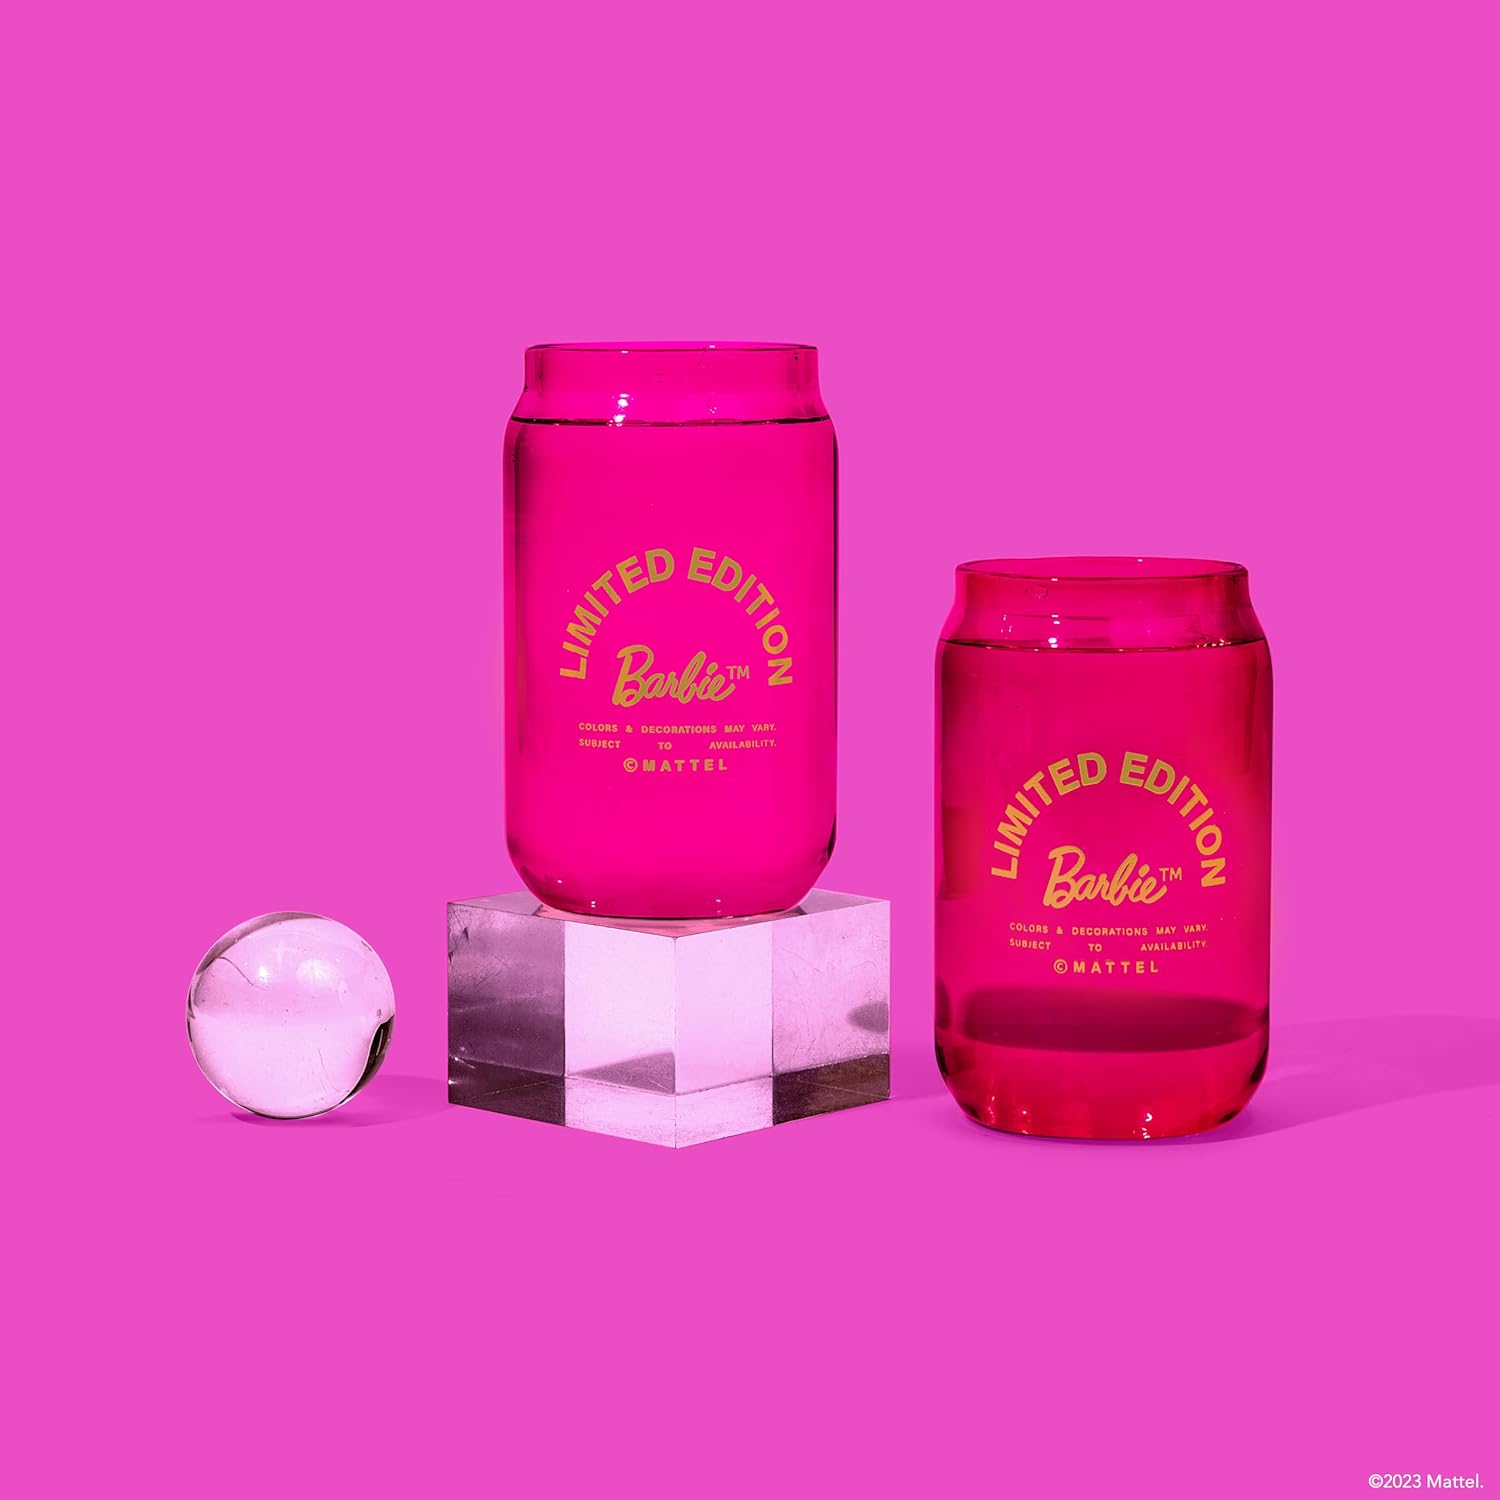 Barbie x Dragon Glassware Espresso … curated on LTK